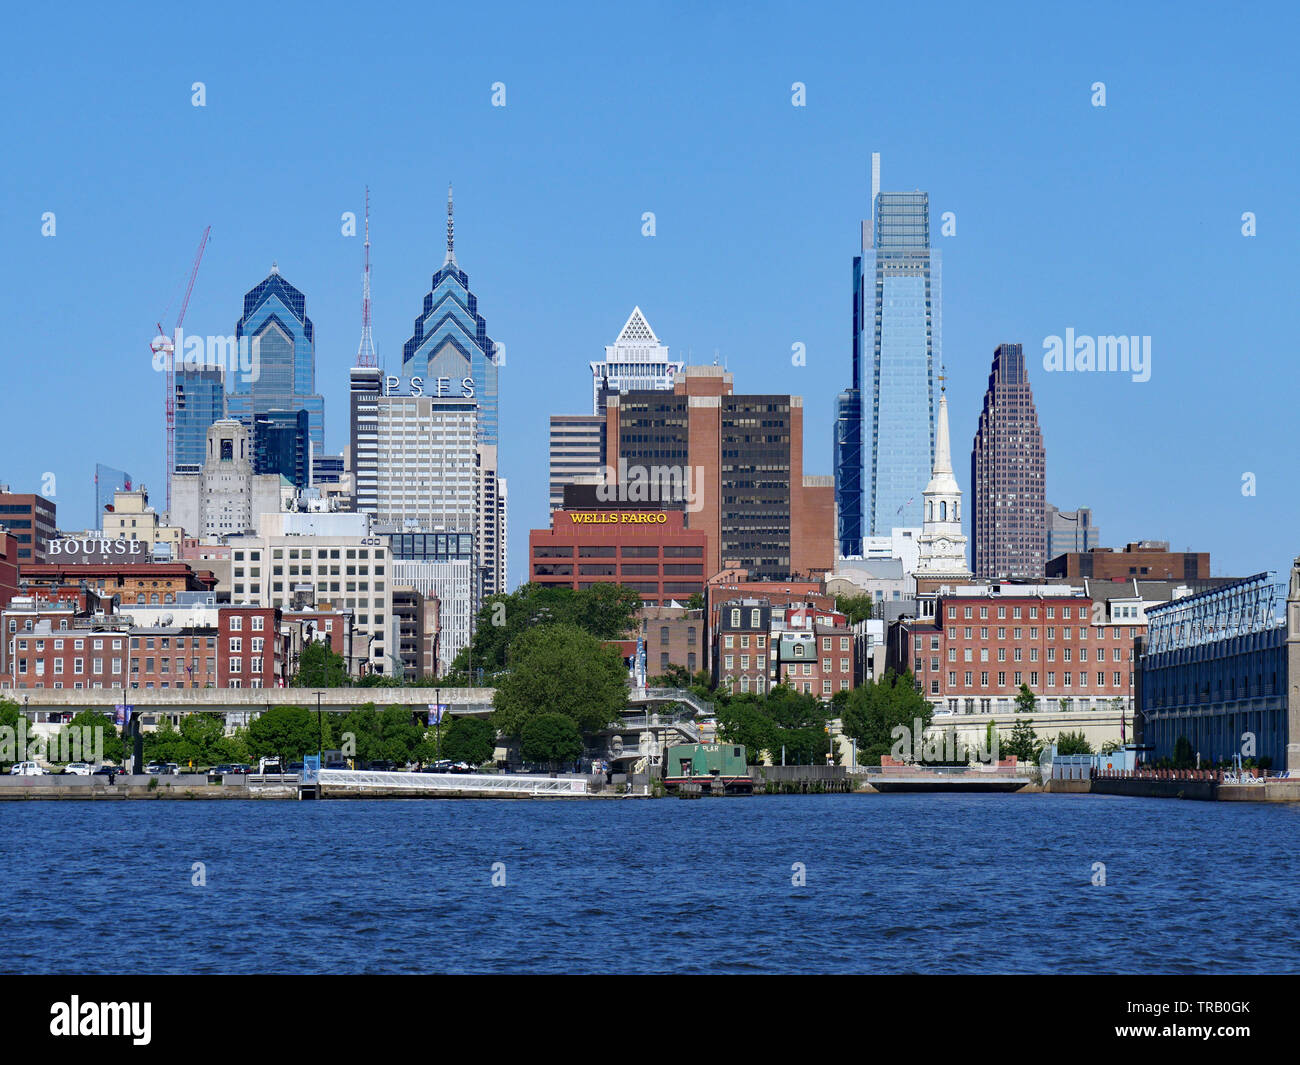 PHILADELPHIA - Mai 2019: A Waterfront Park in Camden, New Jersey, bietet einen schönen Blick auf die Skyline von Philadelphia über den Delaware River, einschließlich Stockfoto